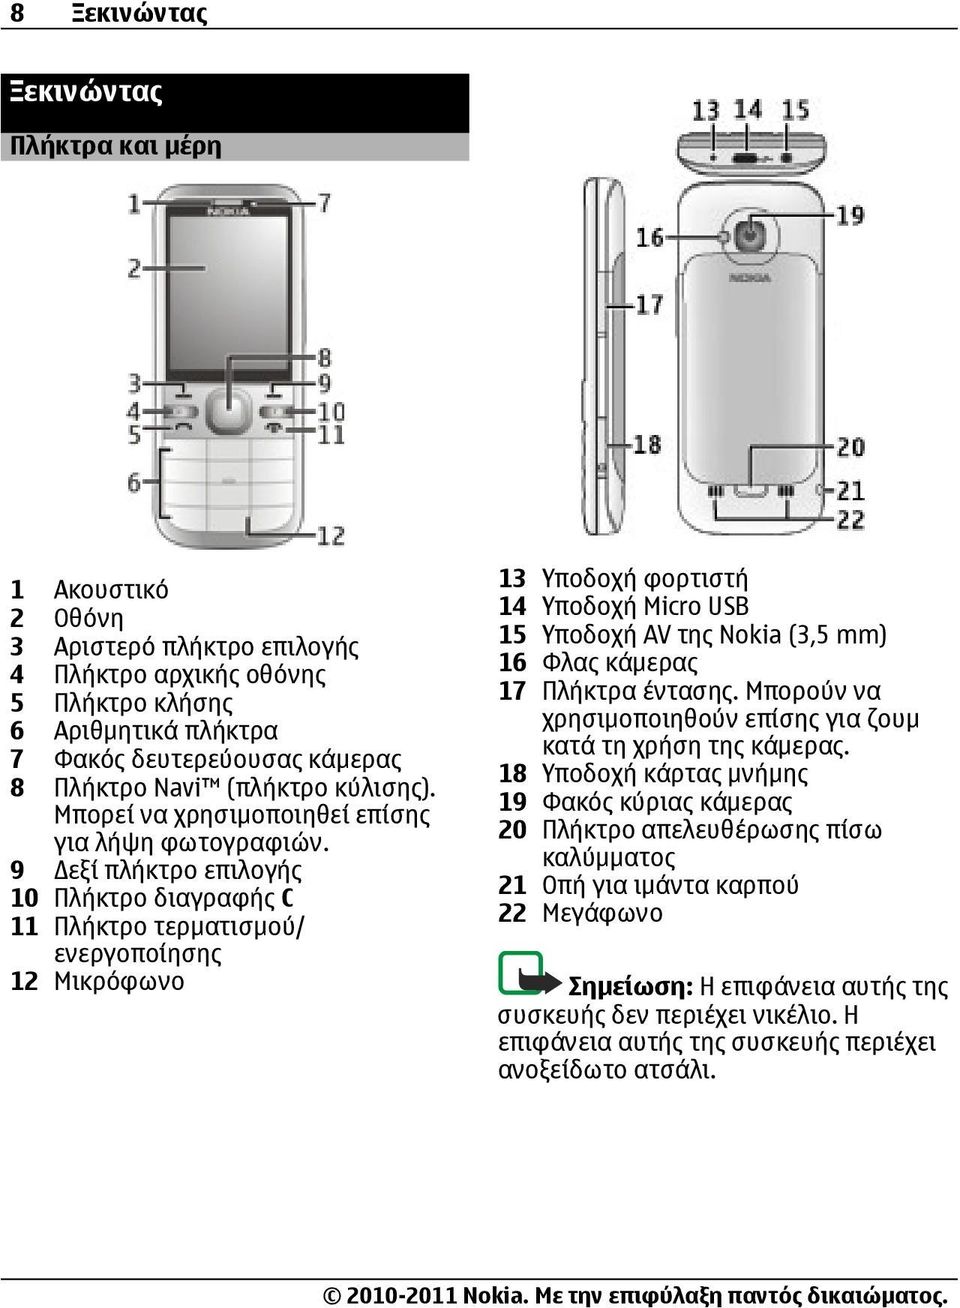 9 εξί πλήκτρο επιλογής 10 Πλήκτρο διαγραφής C 11 Πλήκτρο τερματισμού/ ενεργοποίησης 12 Μικρόφωνο 13 Υποδοχή φορτιστή 14 Υποδοχή Micro USB 15 Υποδοχή AV της Nokia (3,5 mm) 16 Φλας κάμερας 17 Πλήκτρα